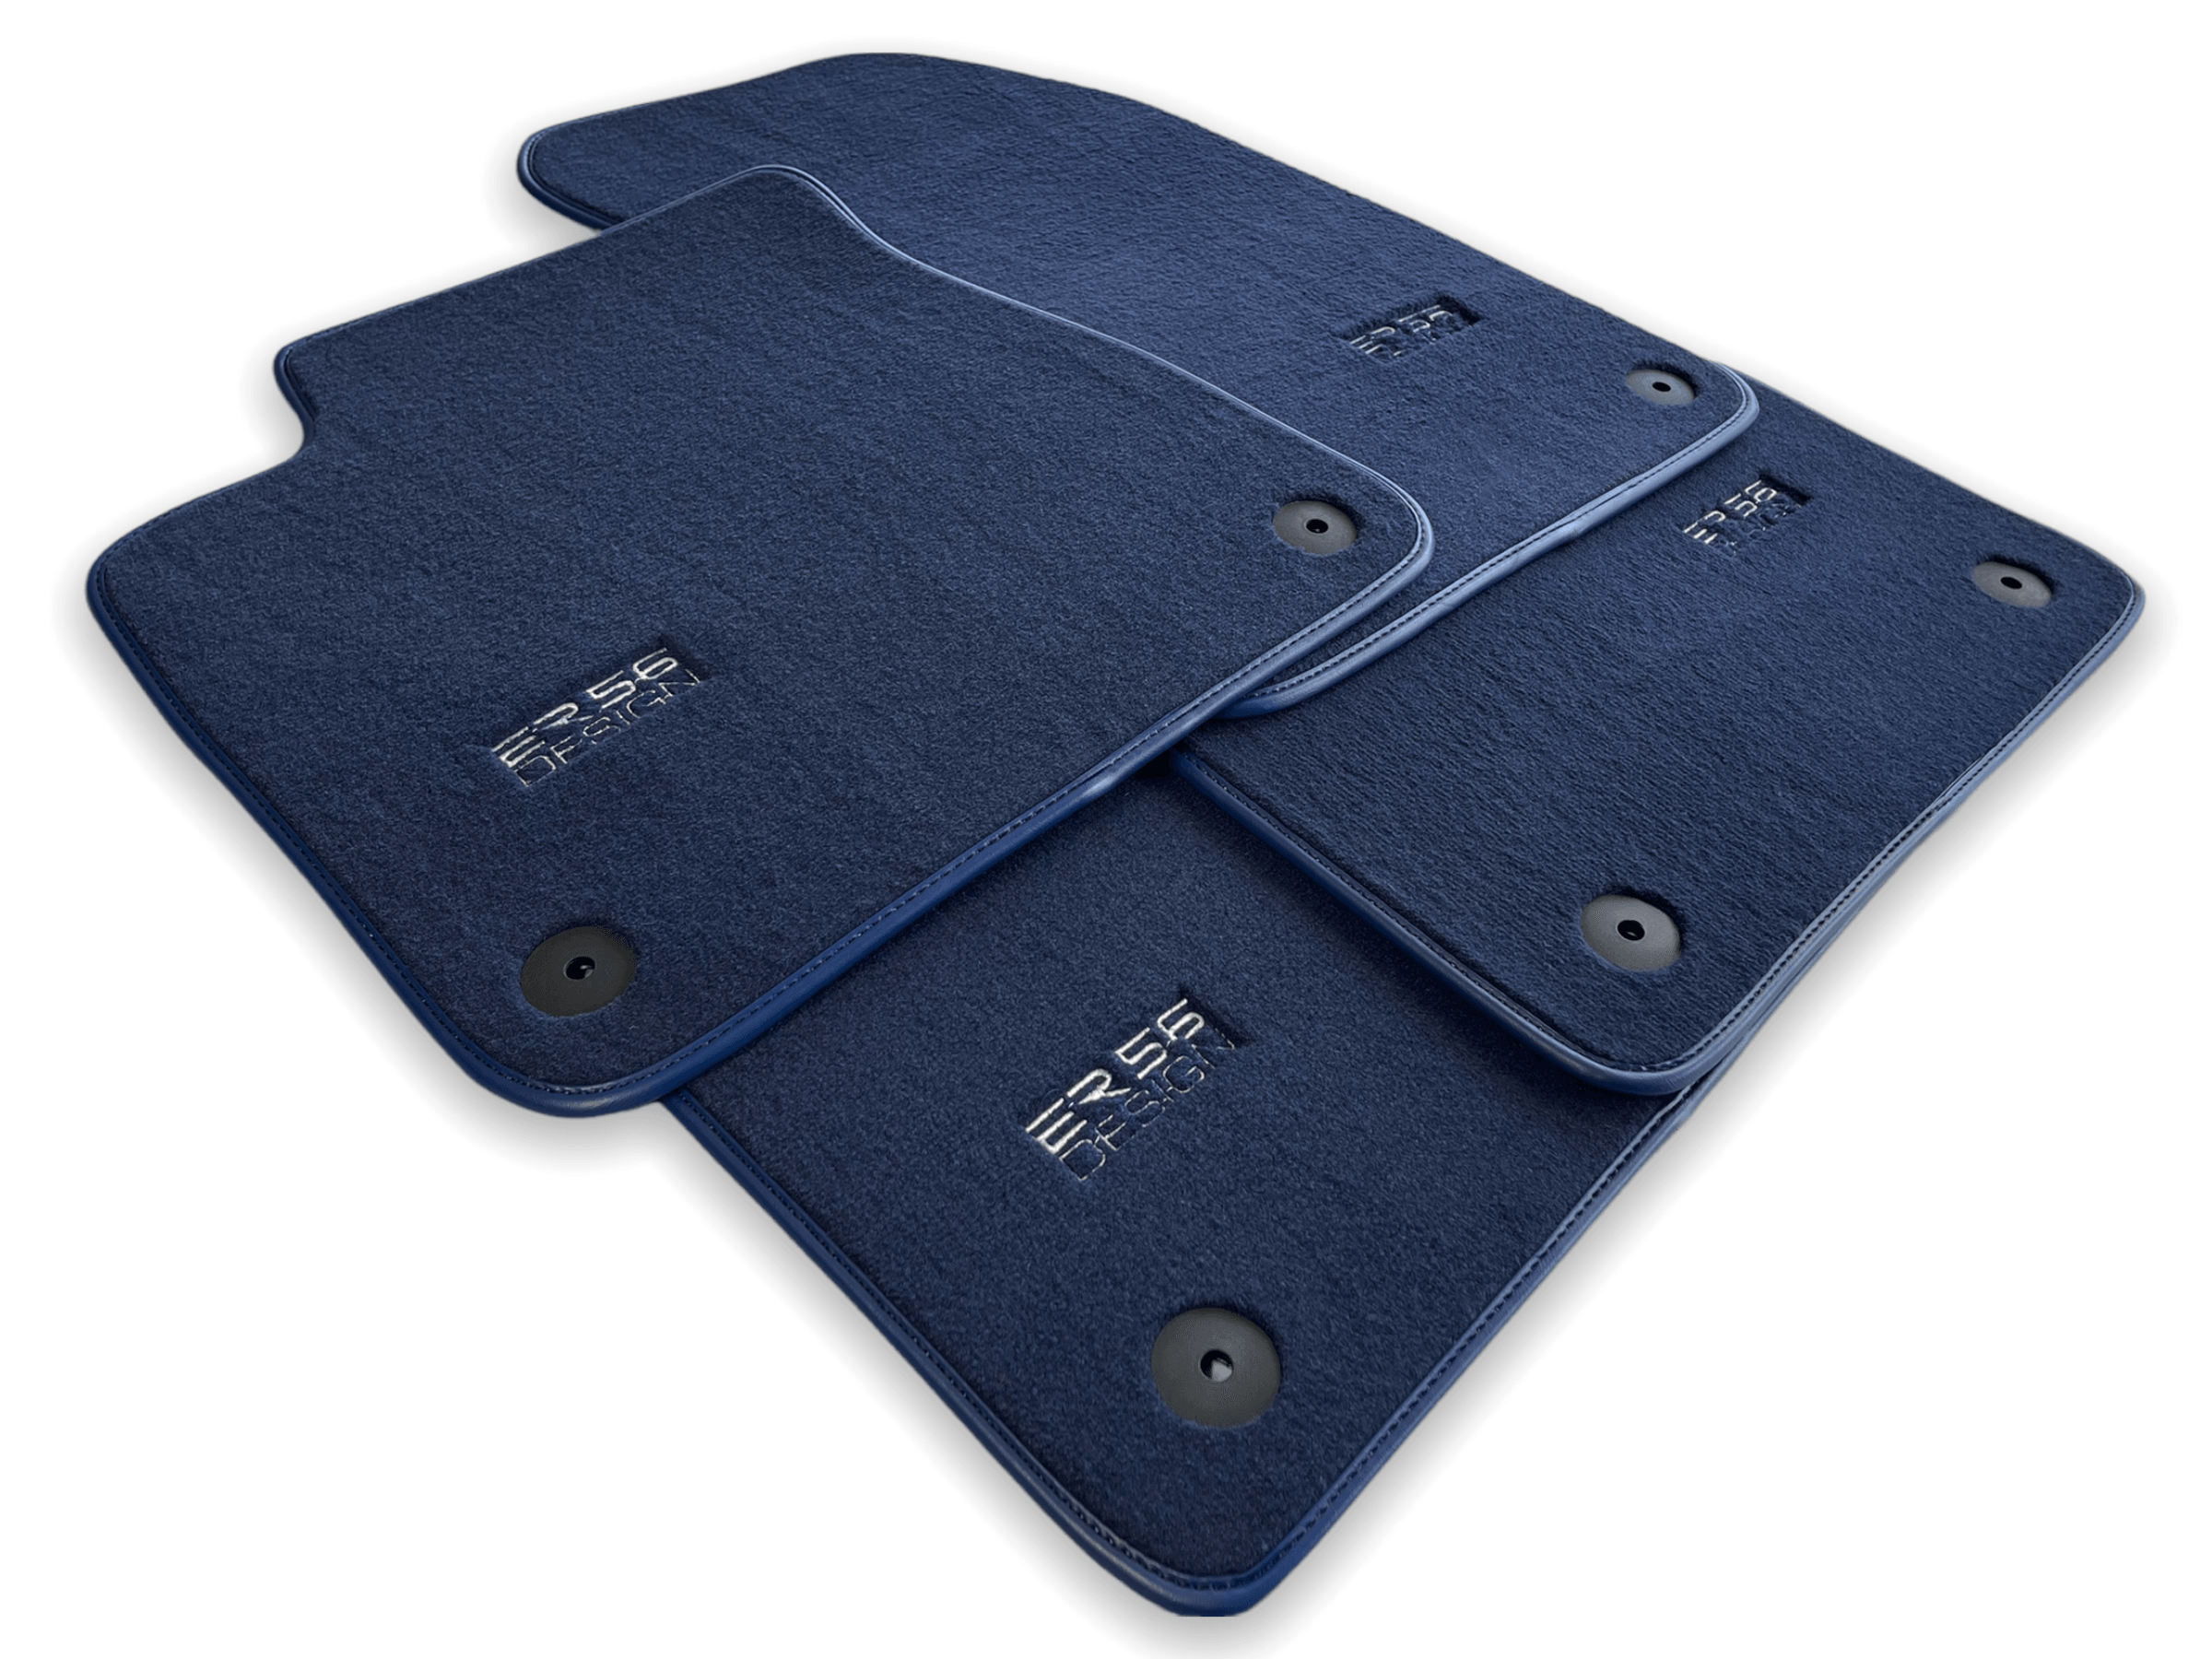 Dark Blue Floor Mats for Audi e-tron GT (2021-2024) | ER56 Design